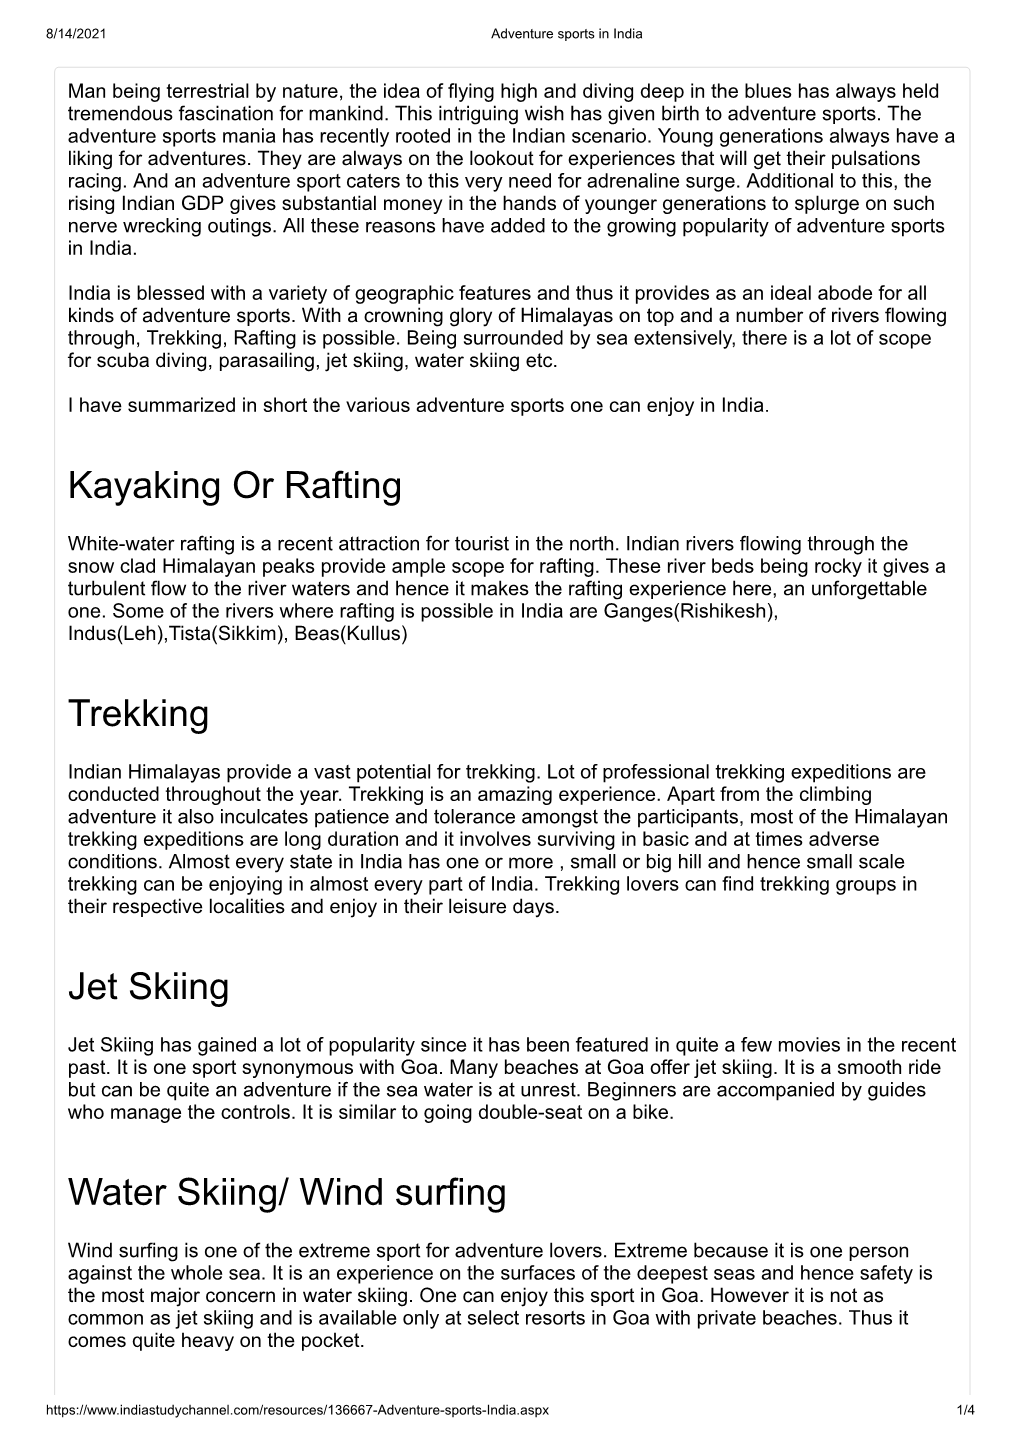 Kayaking Or Rafting Trekking Jet Skiing Water Skiing